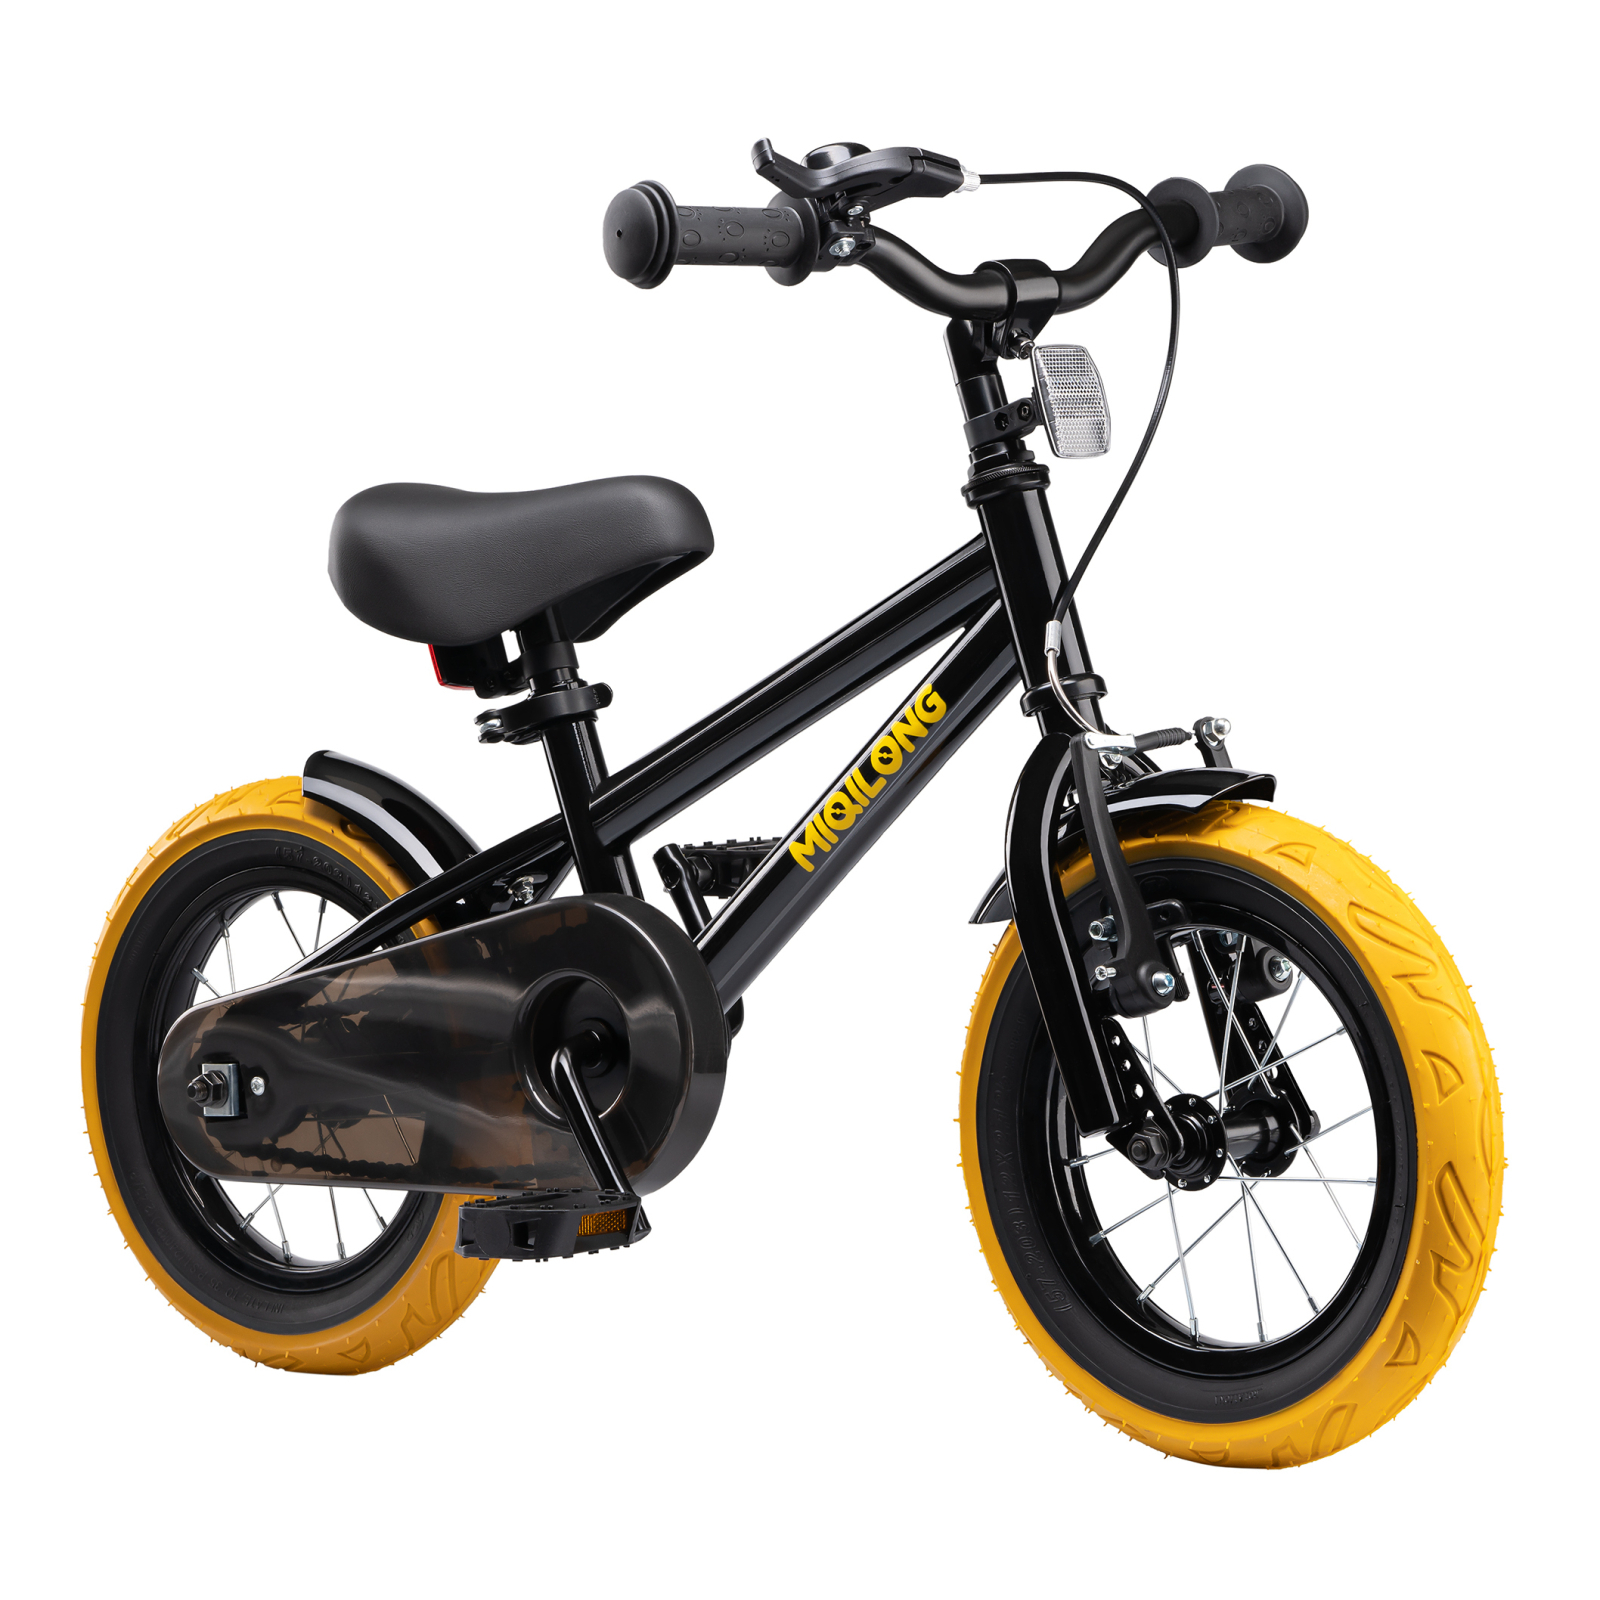 Детский велосипед Miqilong ST Черный 12` (ATW-ST12-BLACK) изображение 2